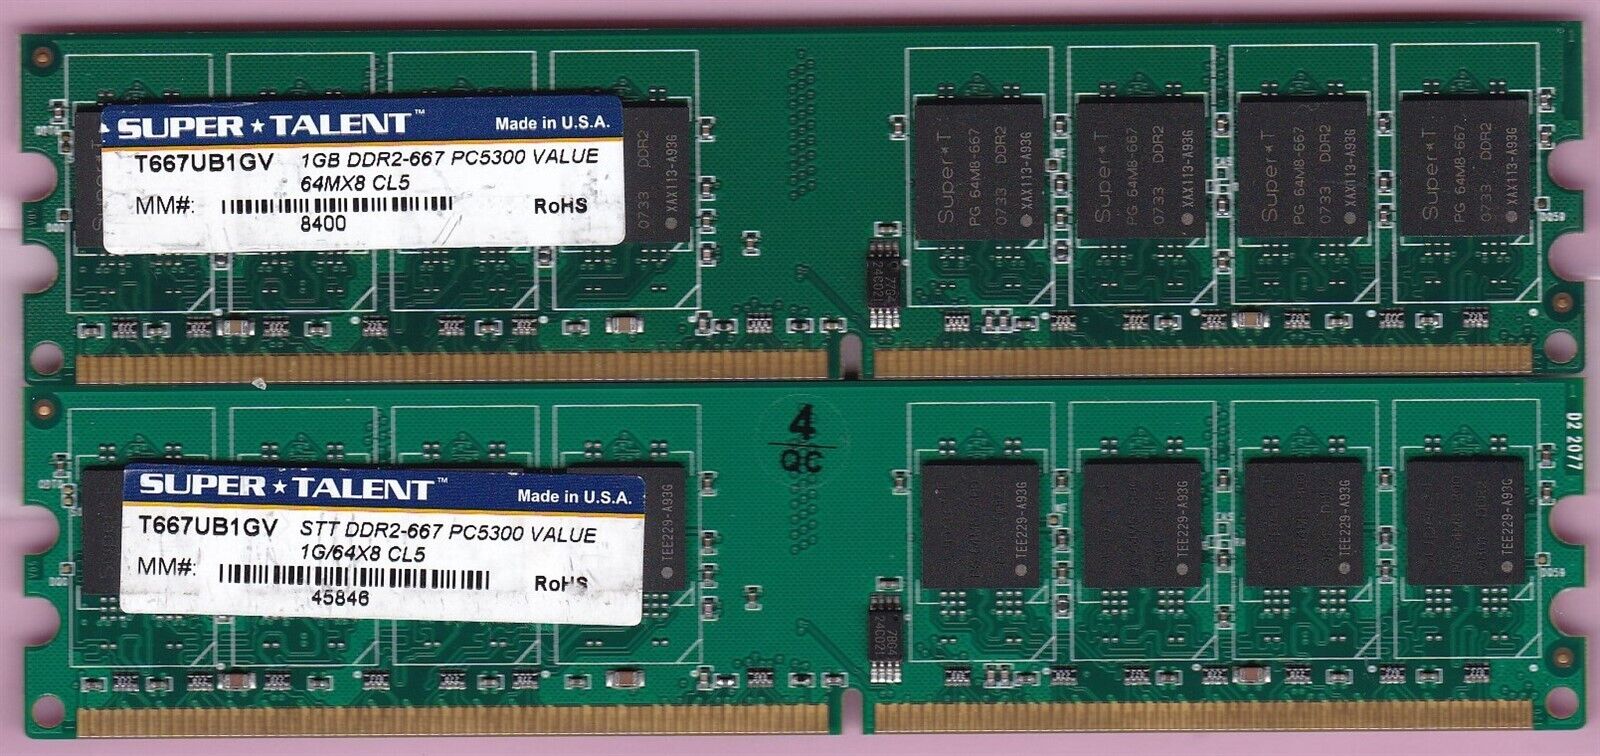 2GB 2x1GB PC2 5300 DDR2-667 SUPERTALENT T667UB1GV SUPER*TALENT Ram Memory Kit